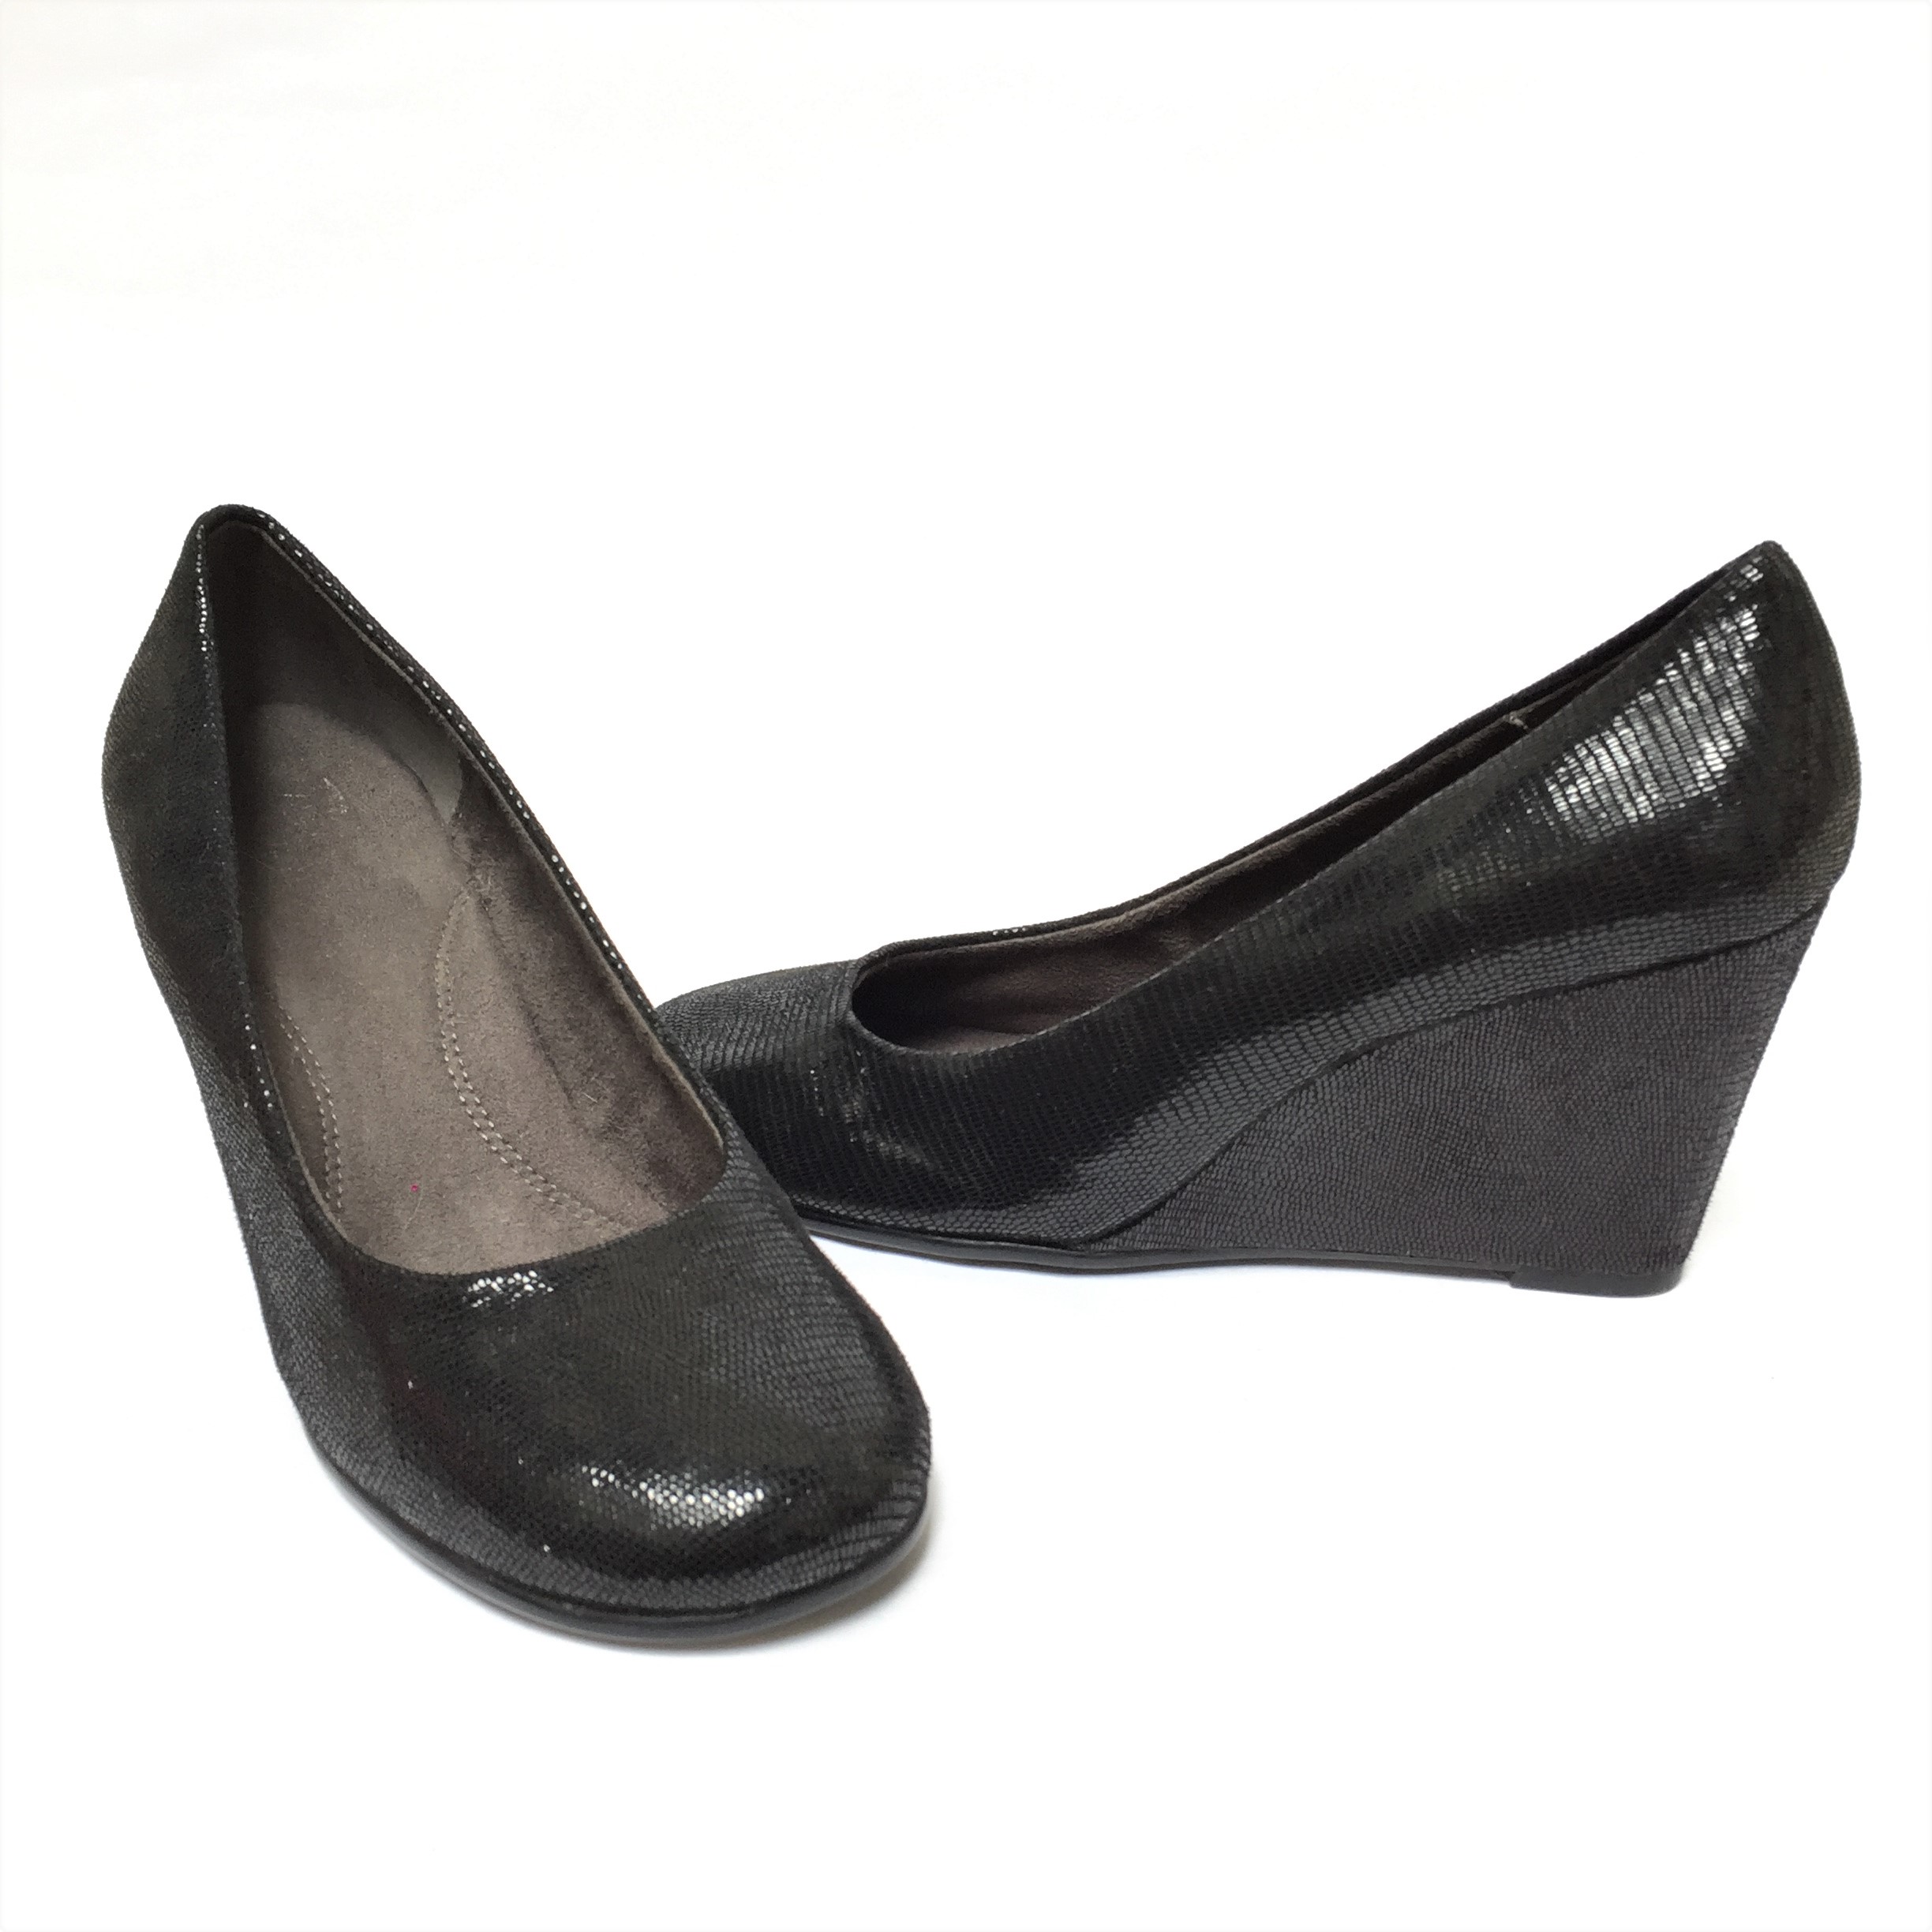 Zapatos Aerosoles negros con textura satinado, punta redonda, taco cuña 7. Muy cómodos! Estado Precio original: $80 Talla 40 | Las Traperas